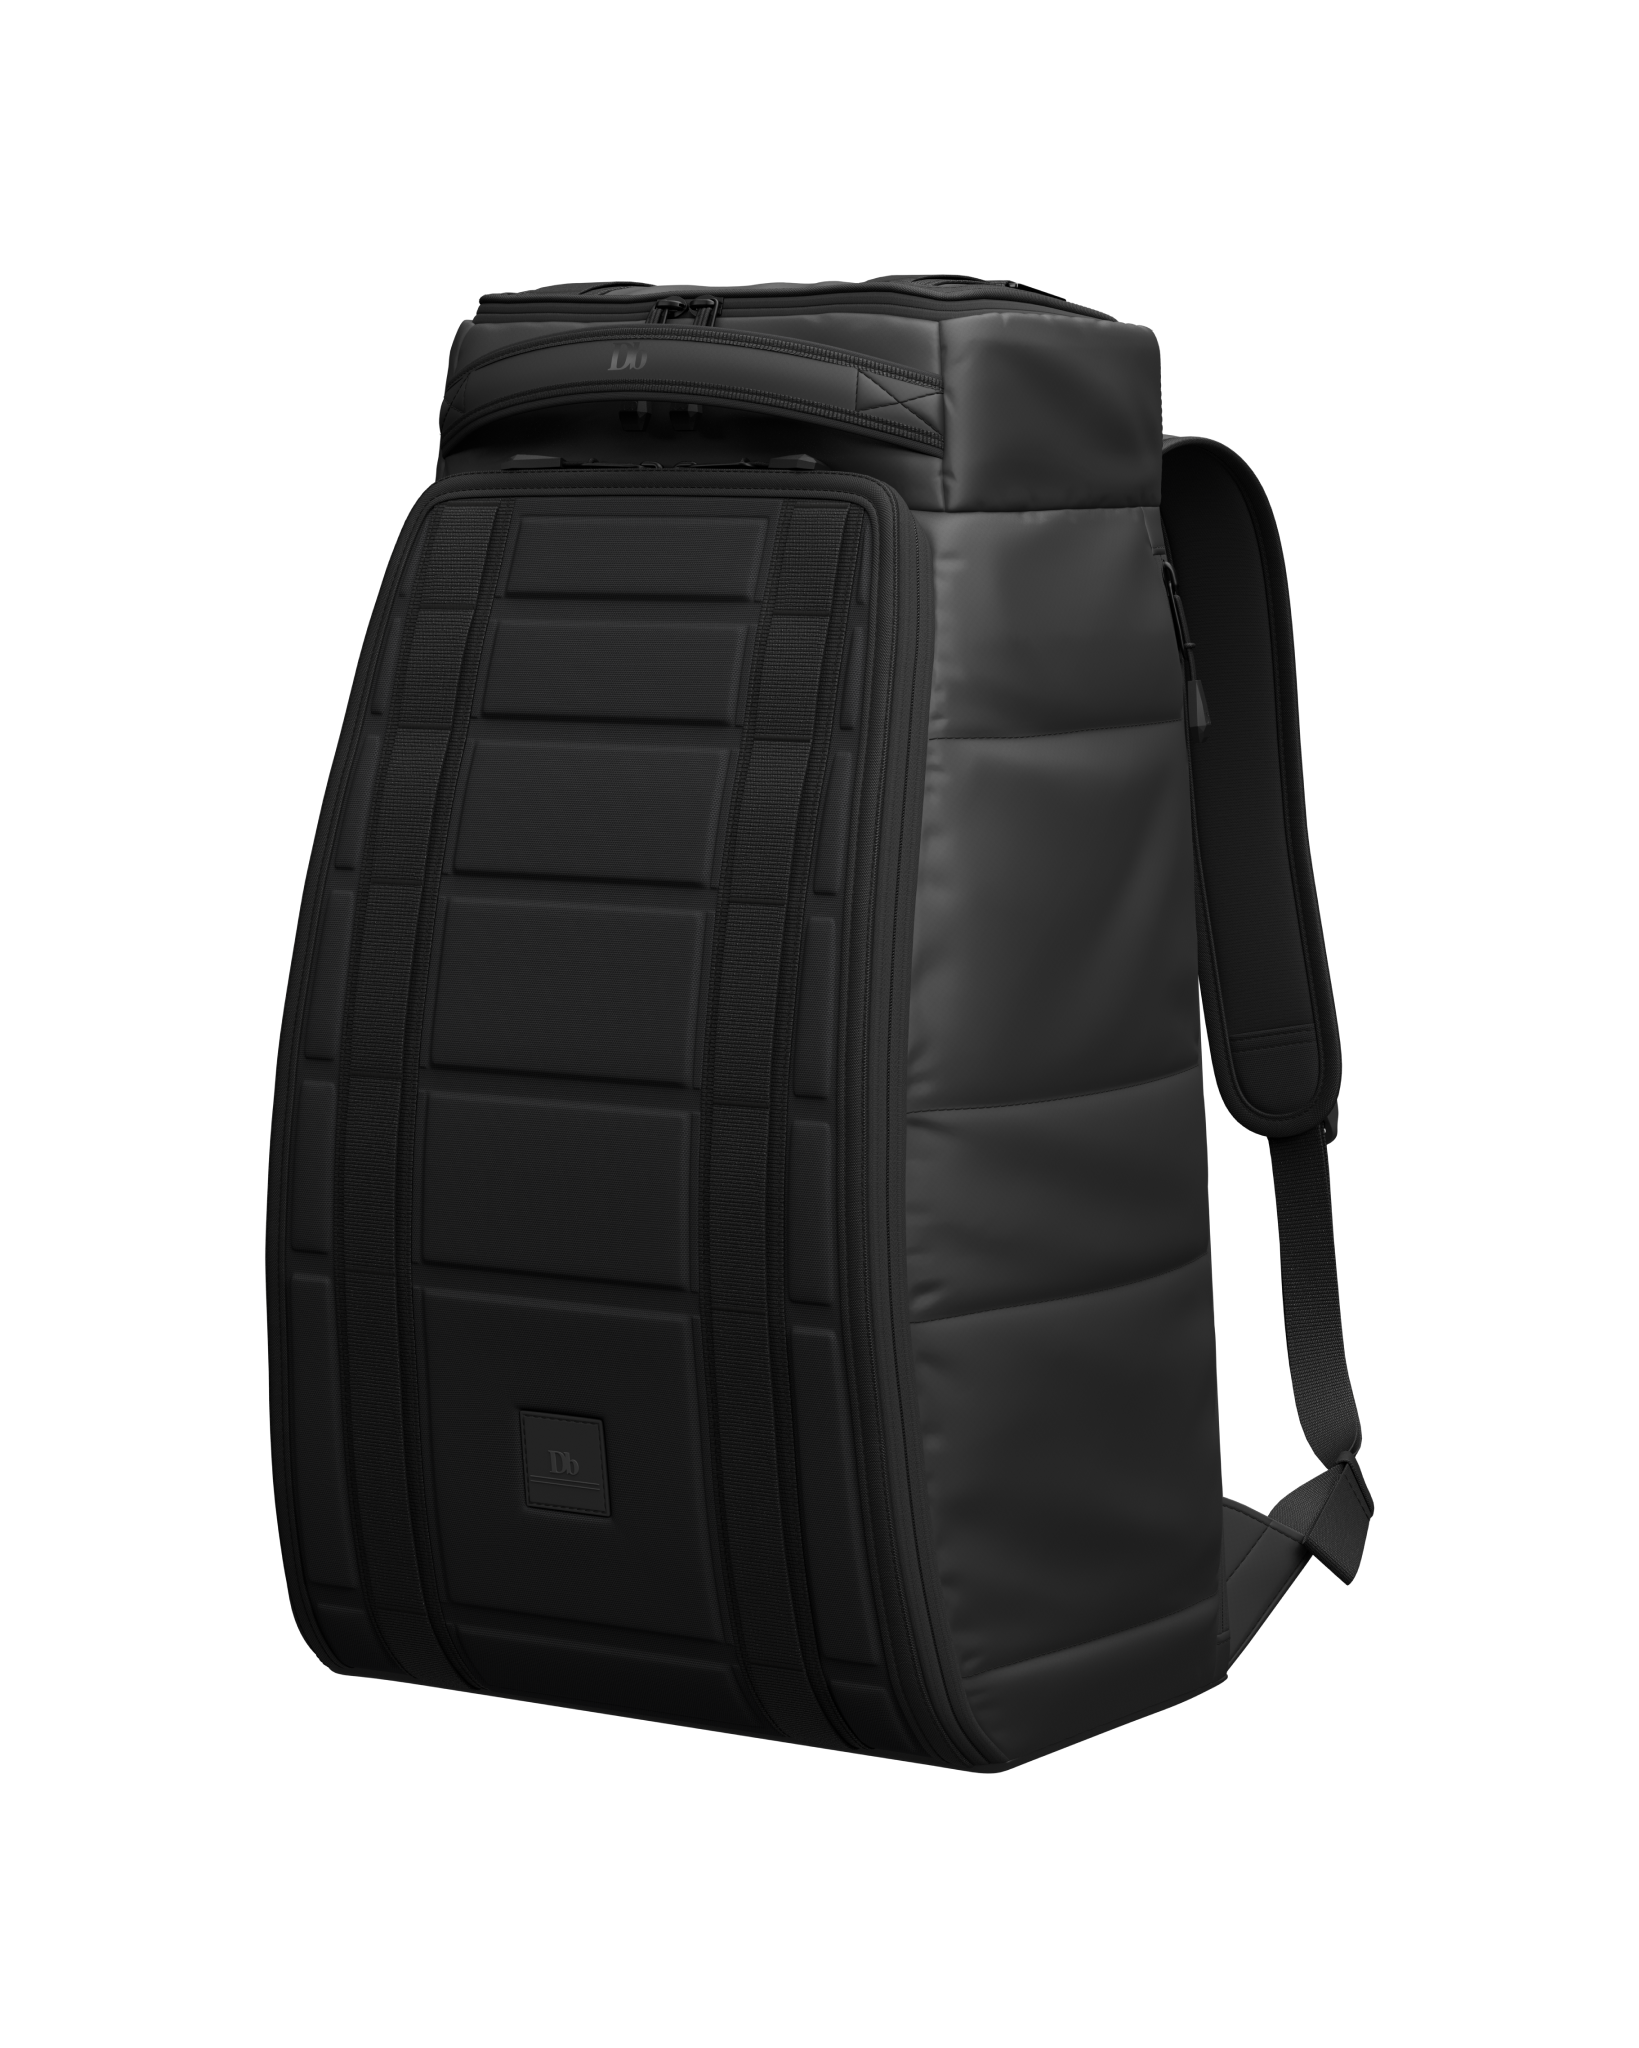 Hugger 1st Generation Backpack 30L Black Out